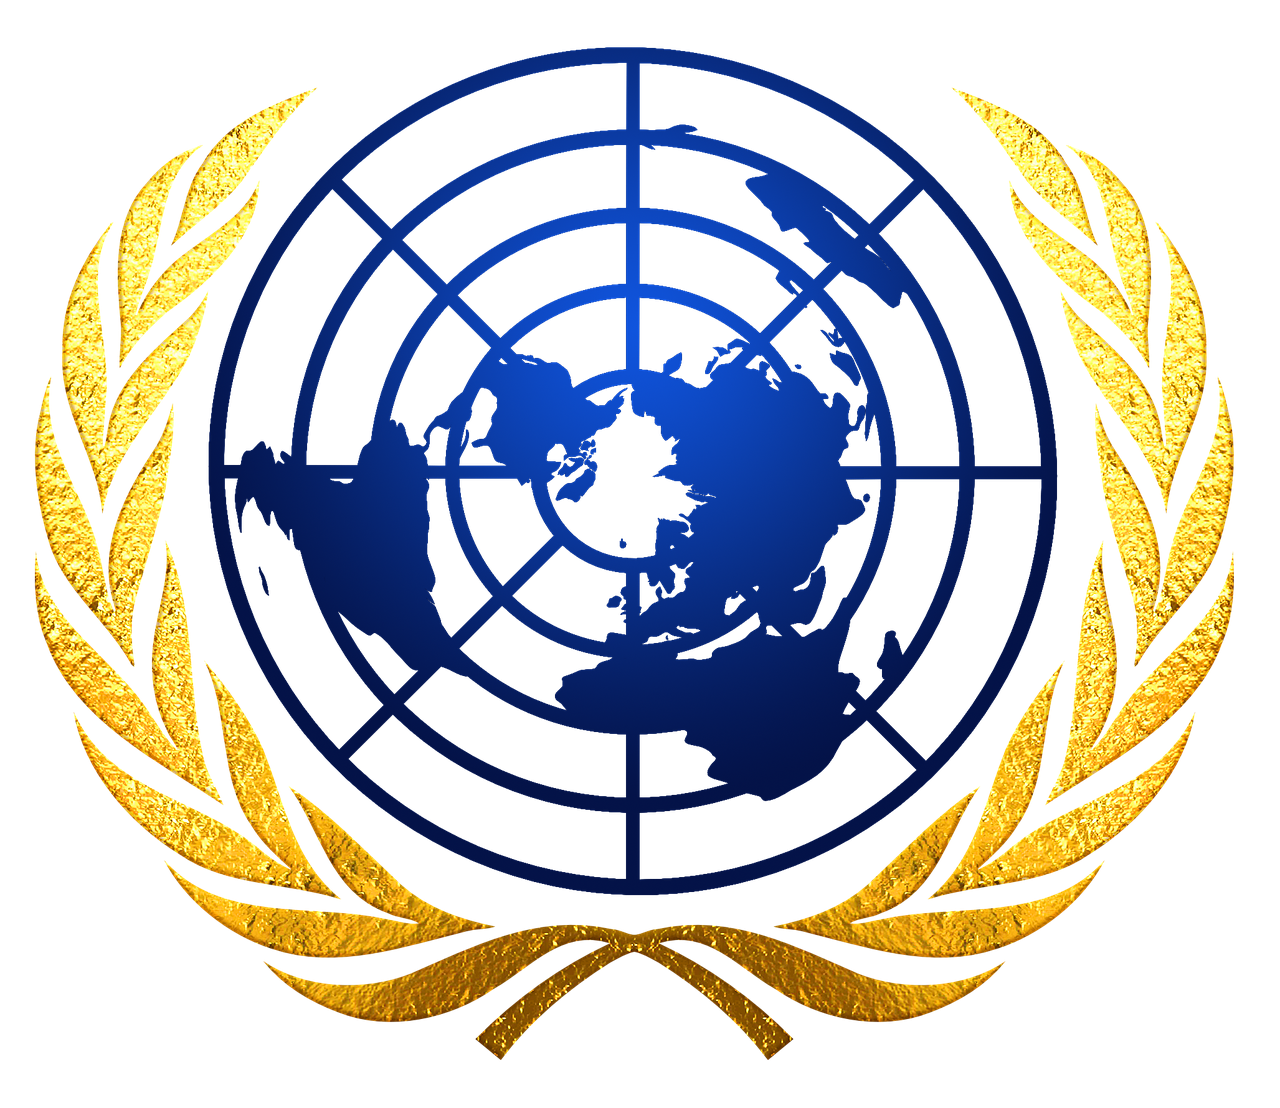 Образ оон. Совет безопасности ООН эмблема. Генеральная Ассамблея ООН эмблема. Организация Объединённых наций ООН эмблема. Совет безопасности ООН символ.